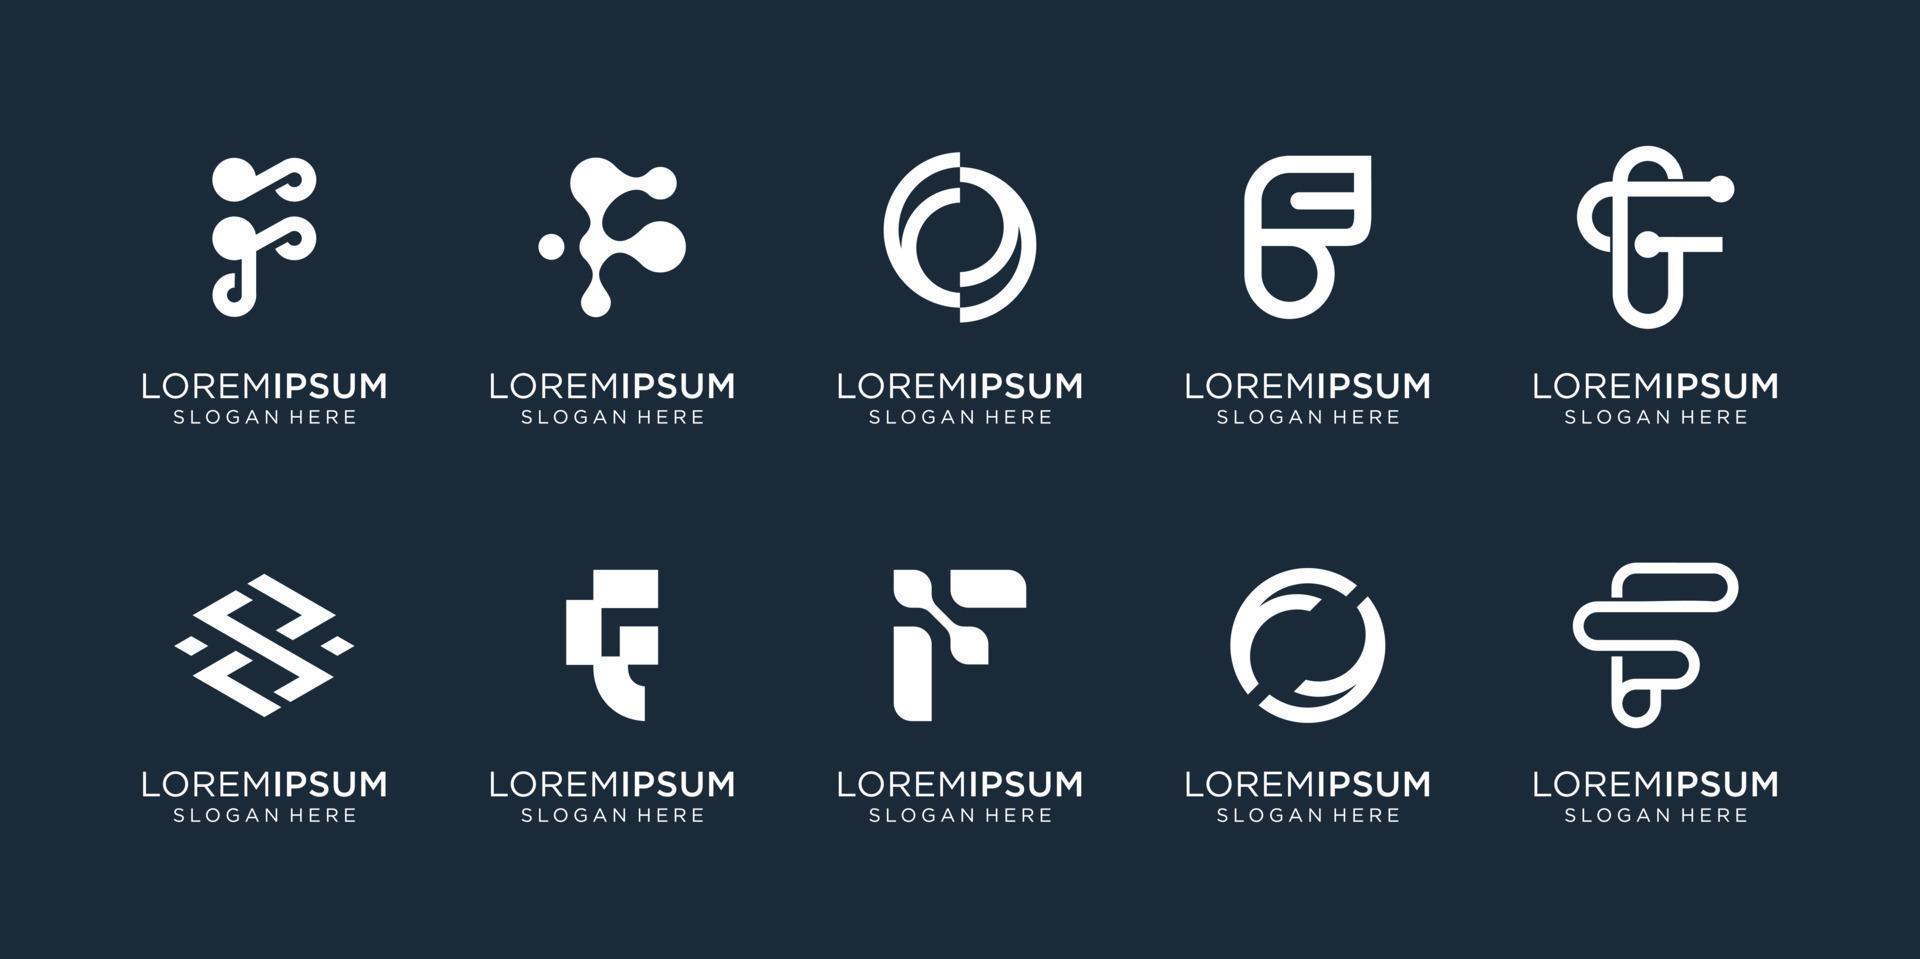 conjunto de plantilla de logotipo de letra f de monograma abstracto. iconos para business.technology,letra f,alfabeto,elegante, equilibrio. vector premium